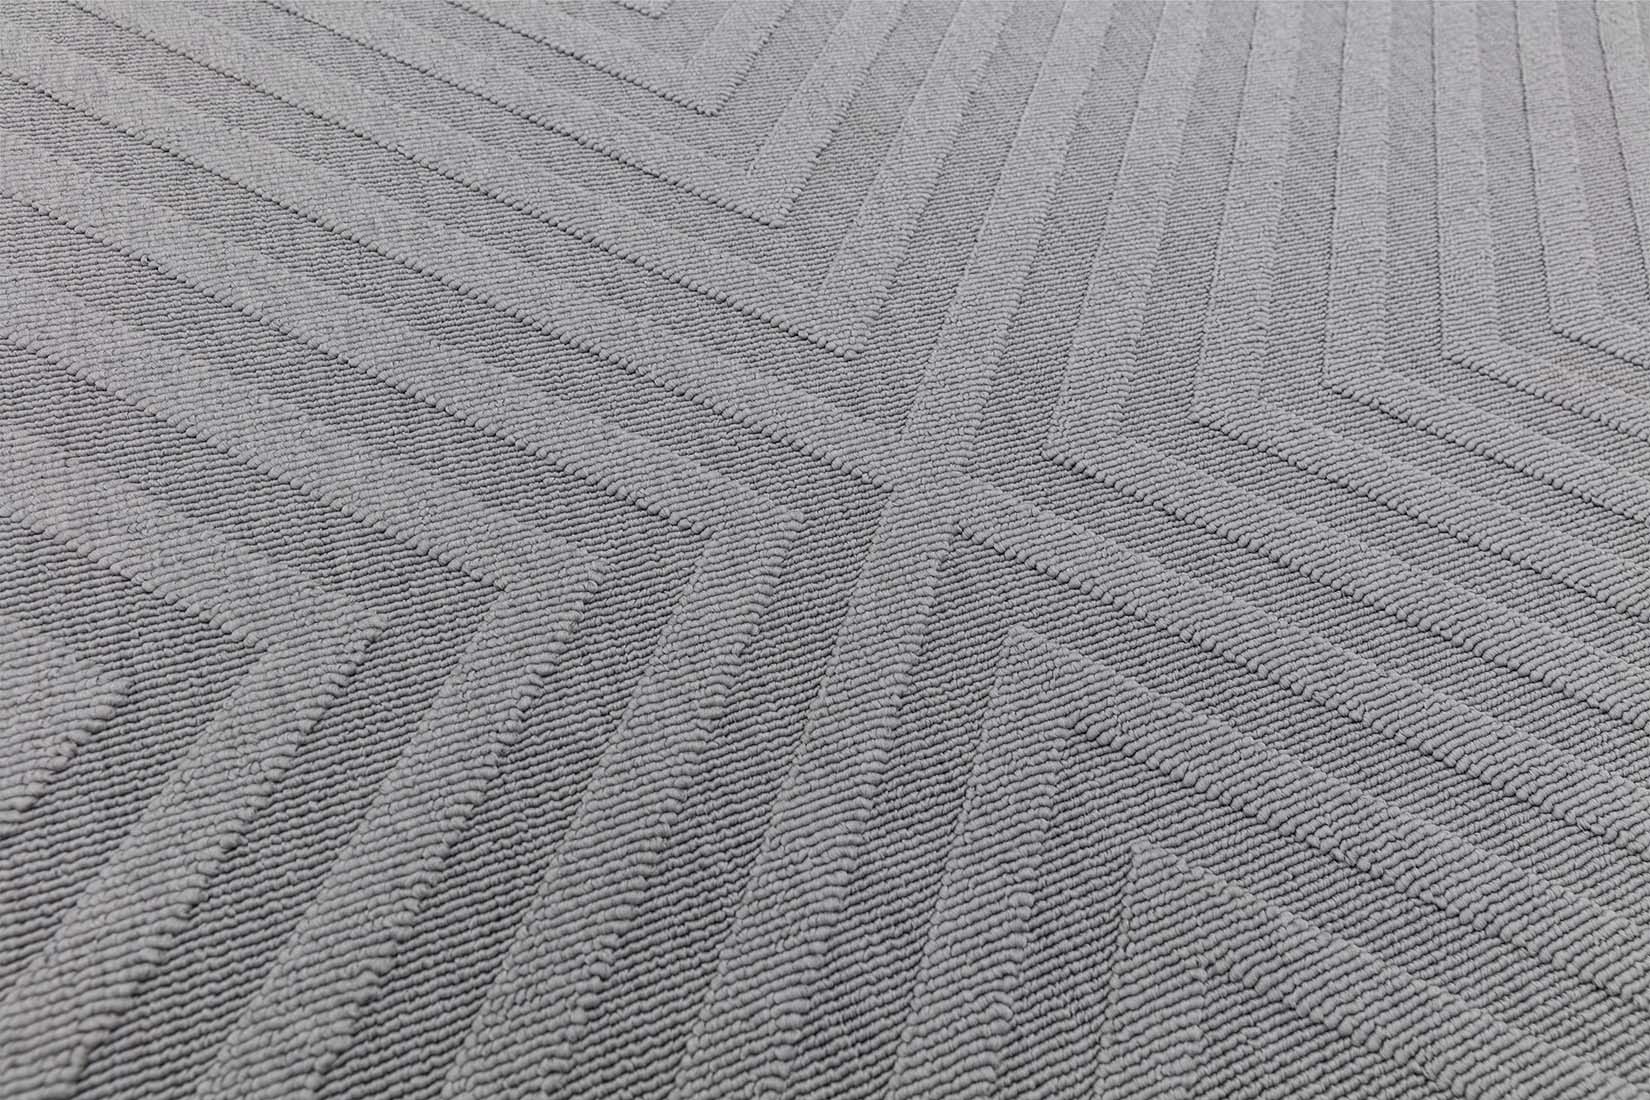 grey indoor/outdoor rug with trellis design
